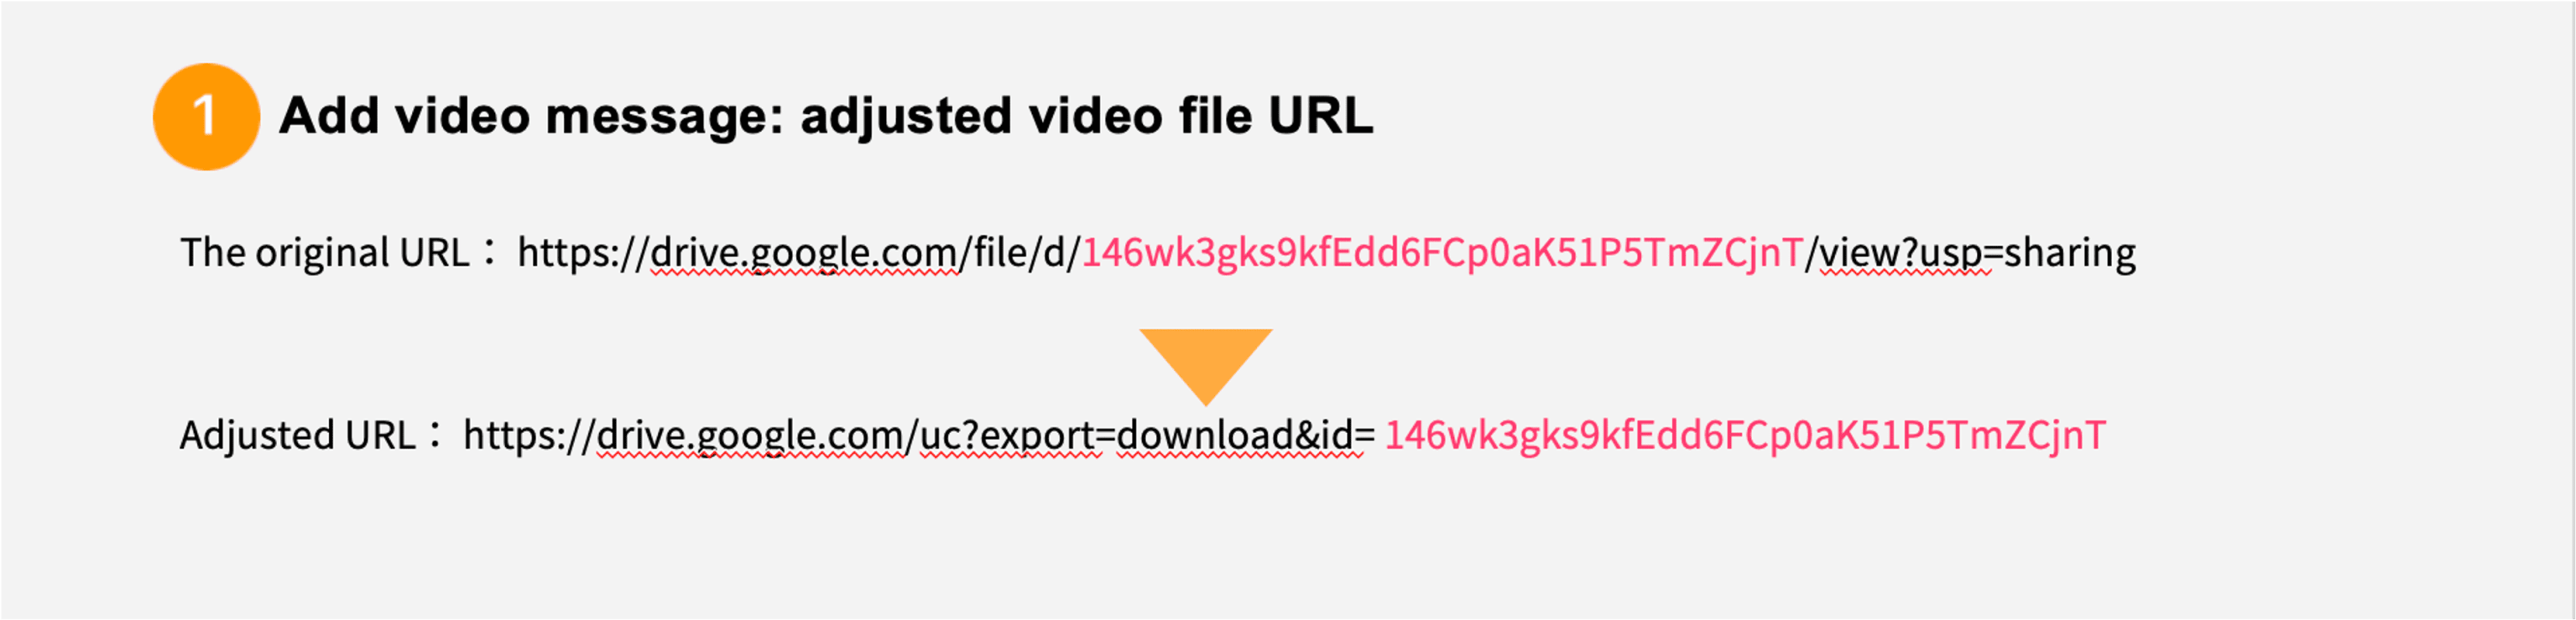  adjusted video file URL